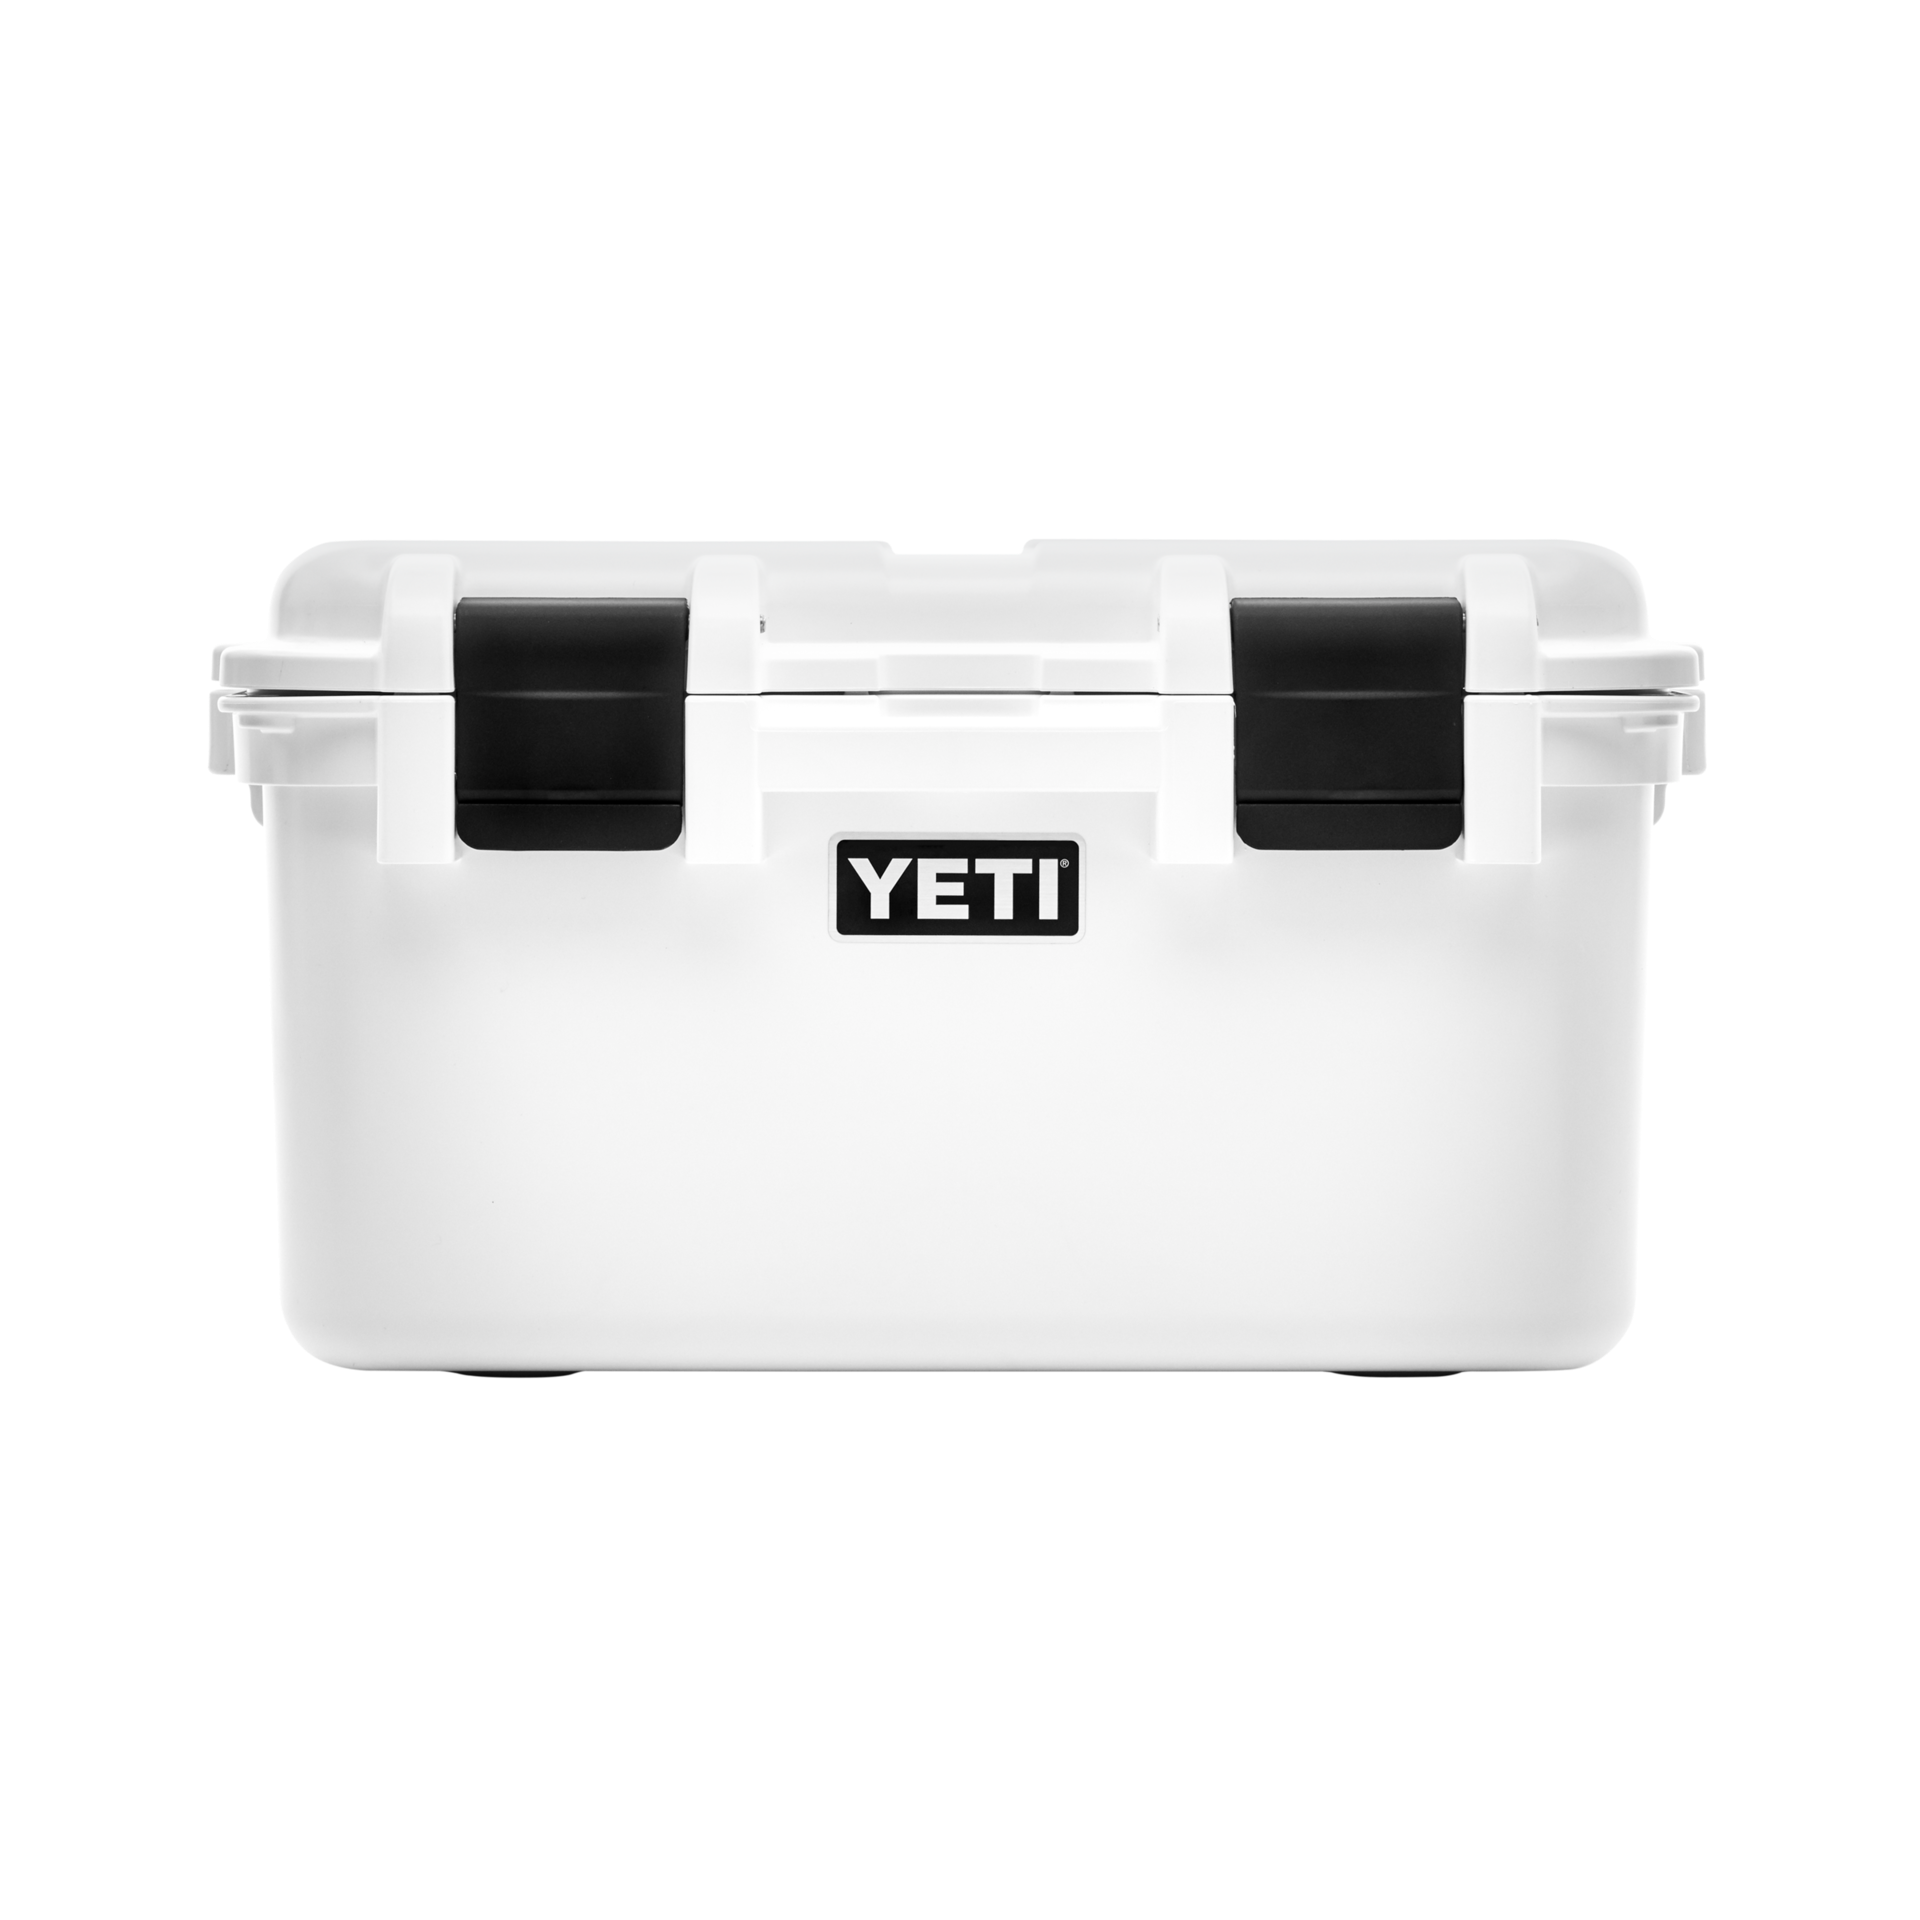 YETI / Loadout Gobox 30 Gear Case - Tan